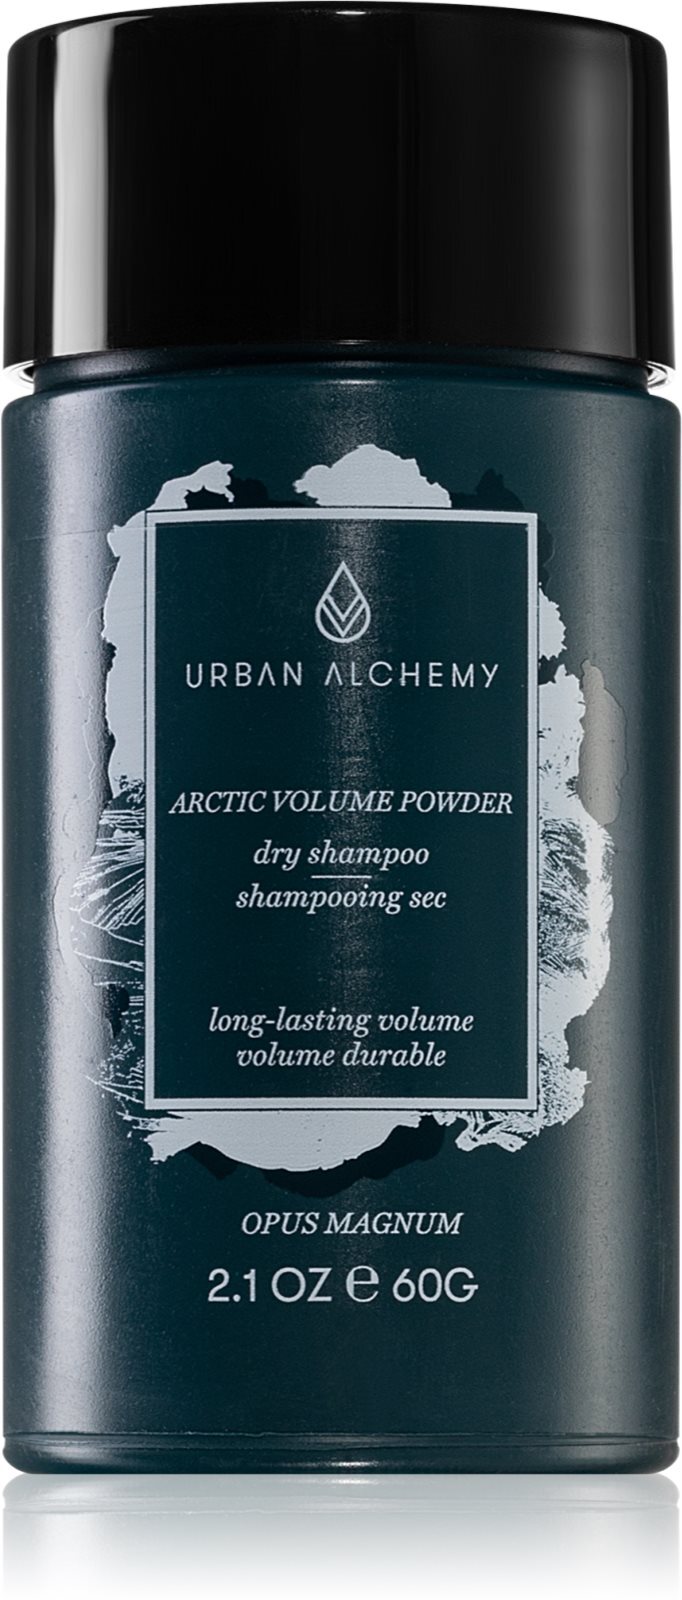 Urban Alchemy сухой шампунь в пудре для увеличения объема волос Opus Magnum  Arctic купить в Москве | Доставка по